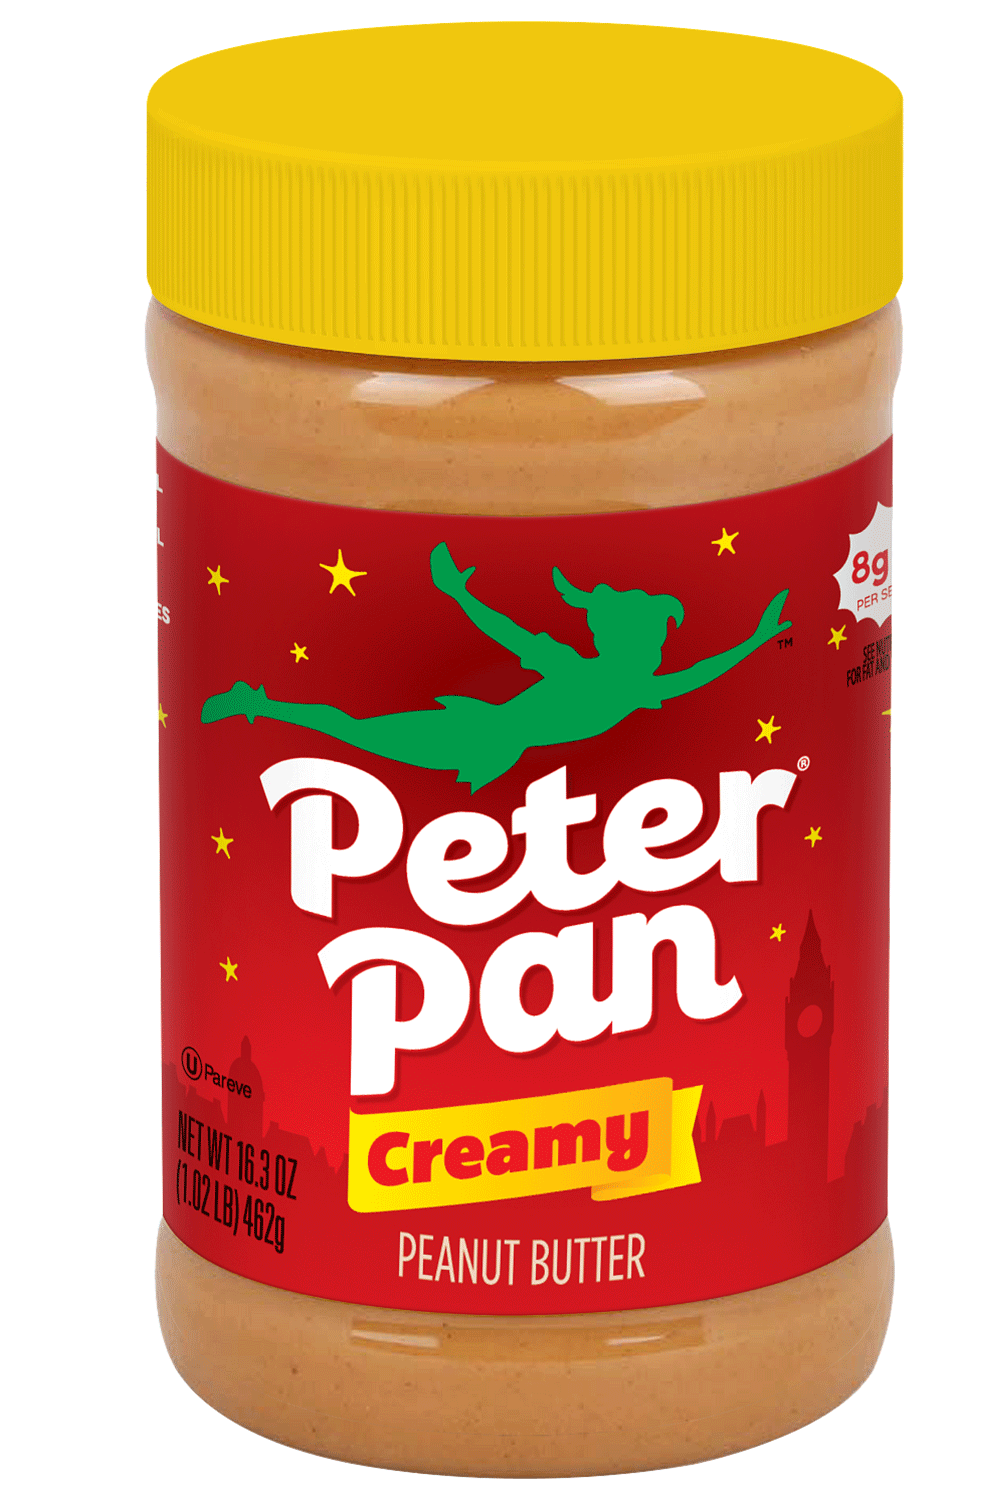 https://www.peterpanpb.com/wp-content/uploads/2021/06/Peter-Pan-Regular-Creamy-Peanut-Butter-16.3-oz-packaging.png